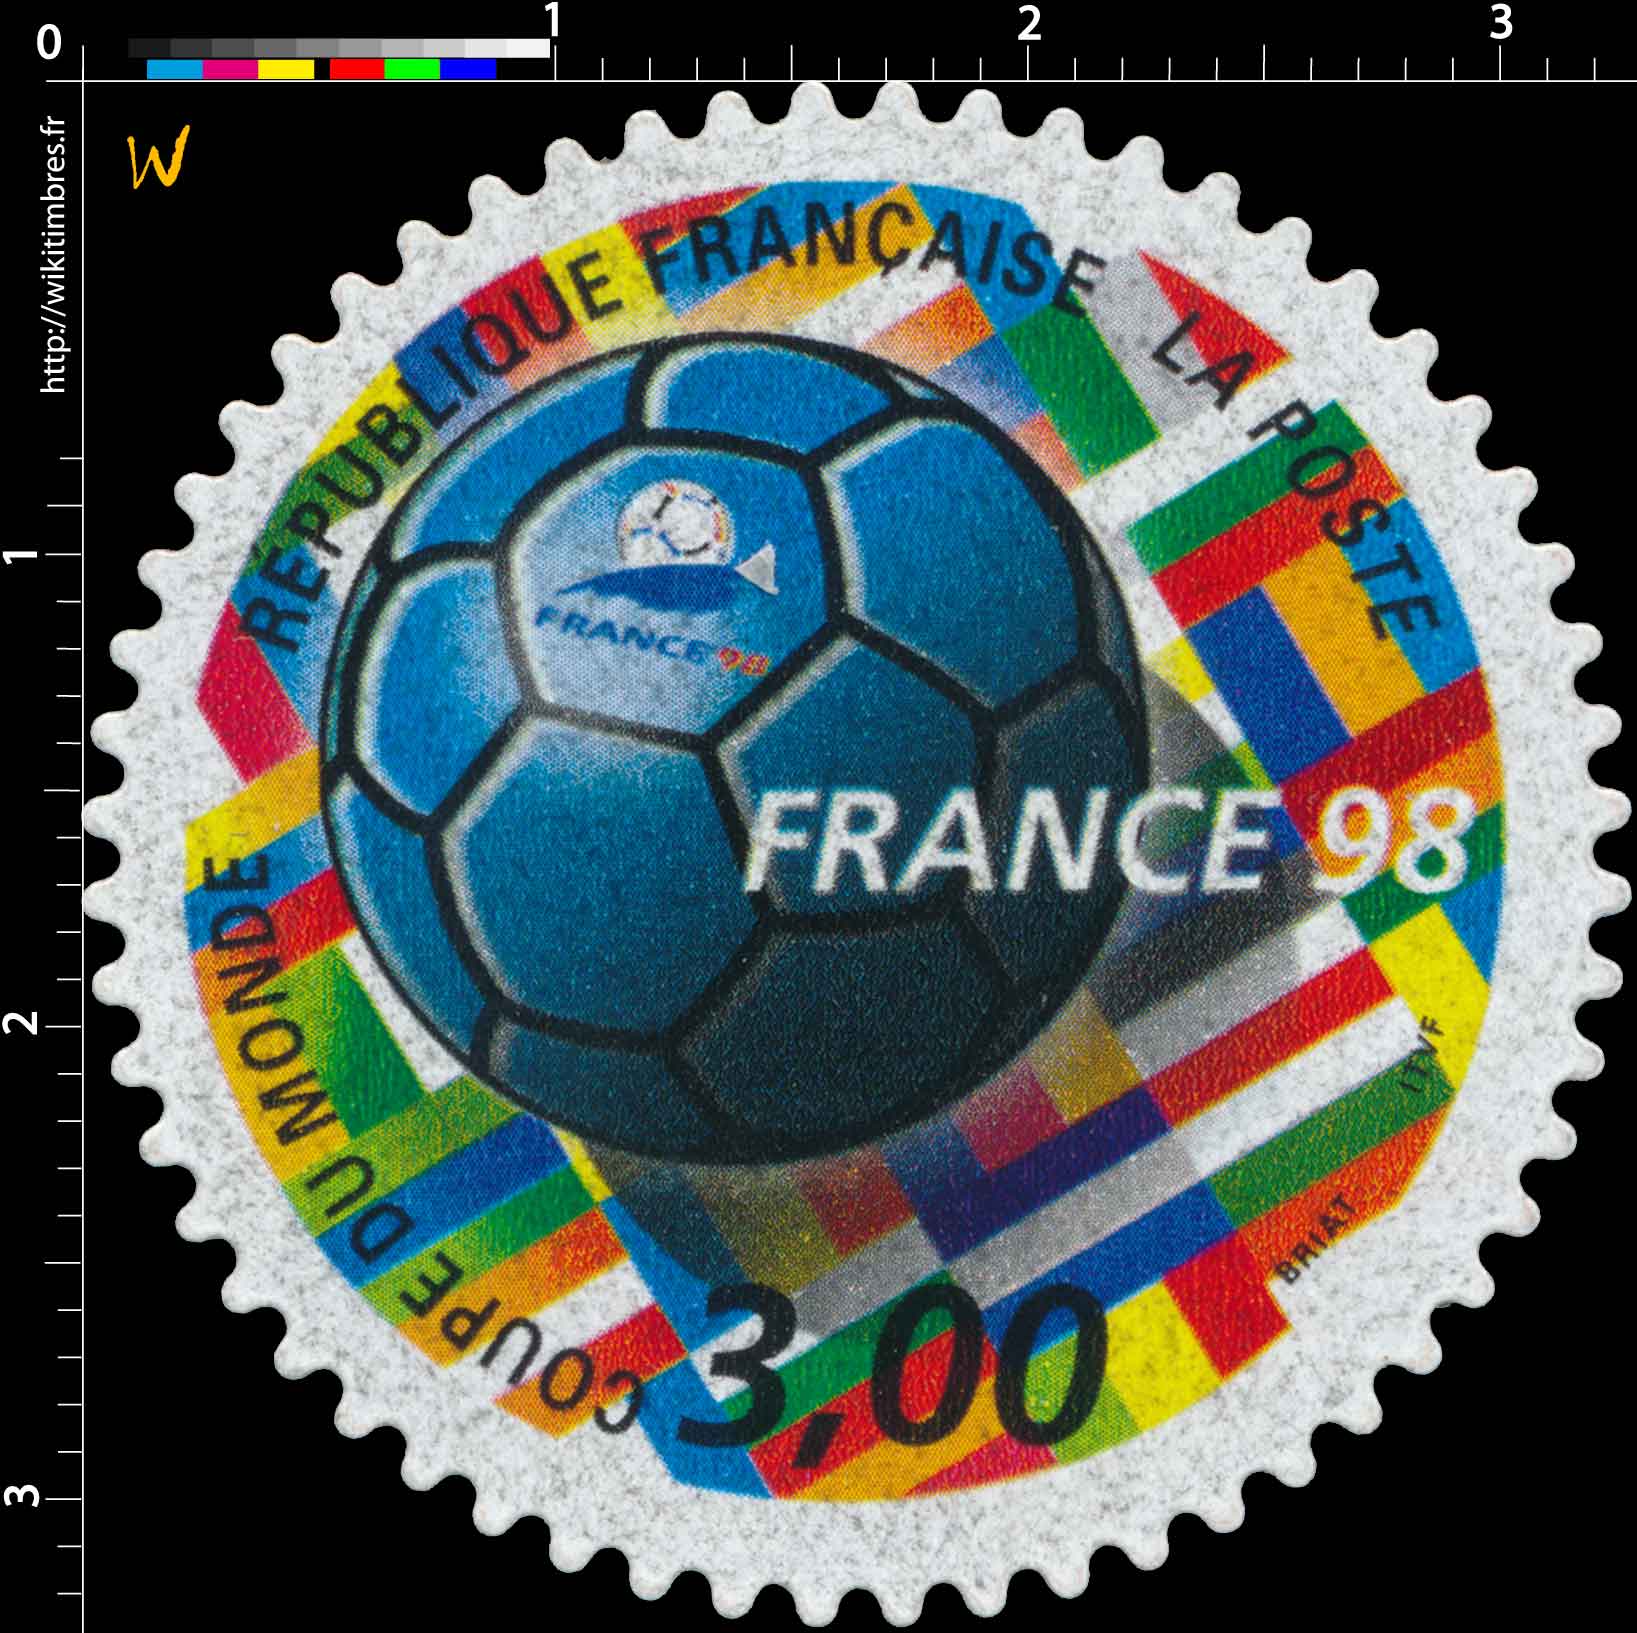 France 98 Coupe du Monde